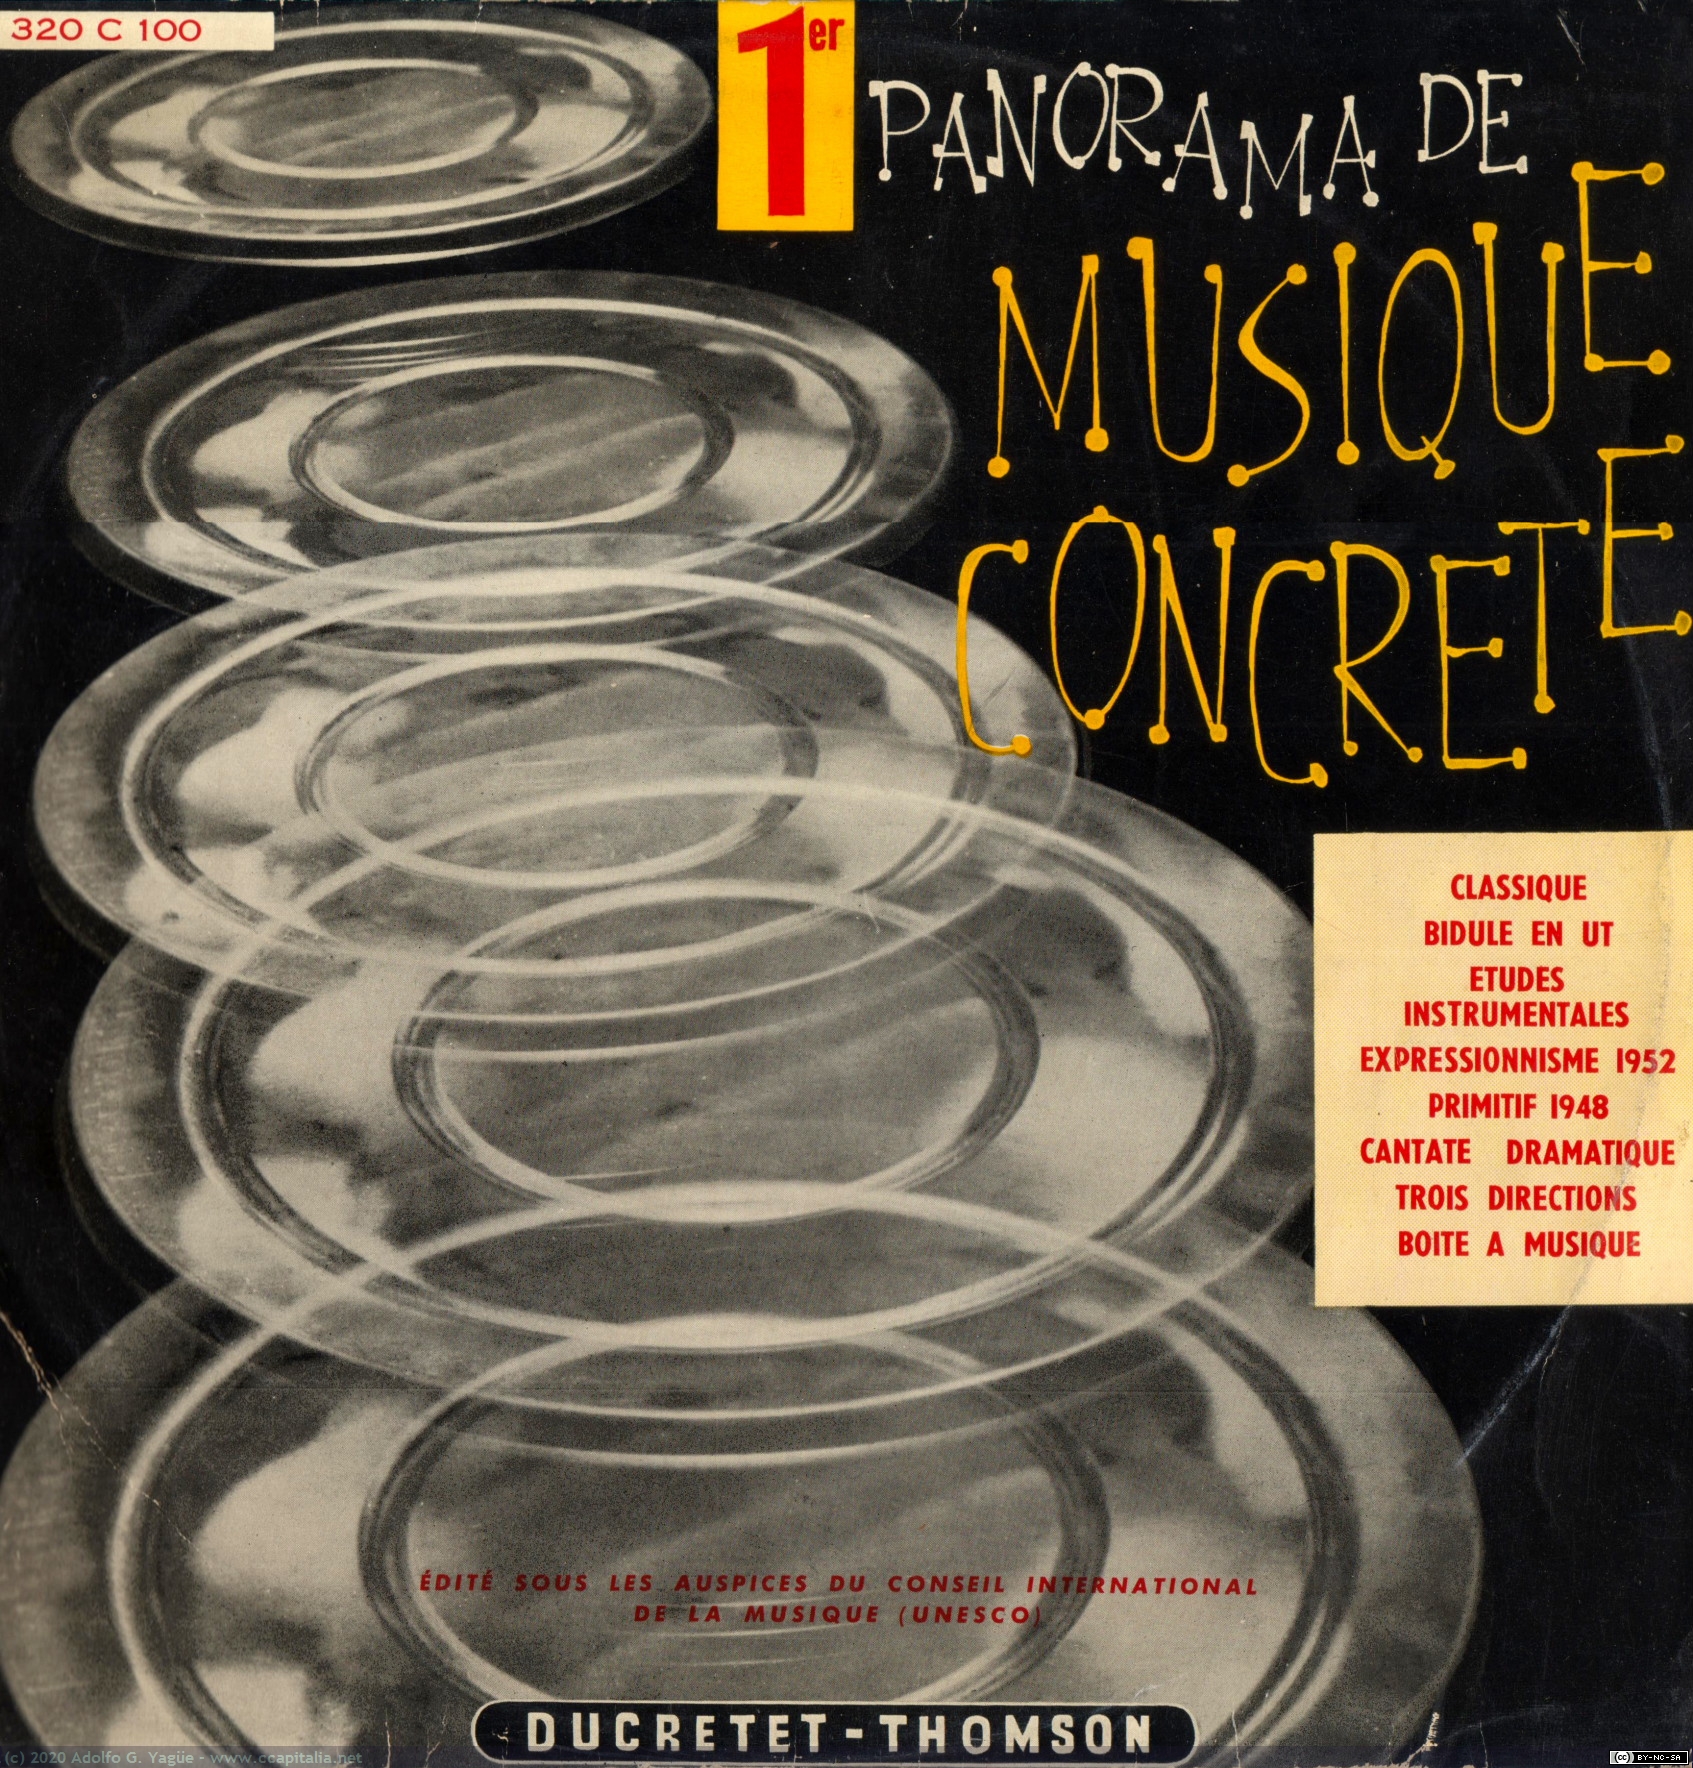 1404 - 1er Panorama de Musique Concrète (1), 1957